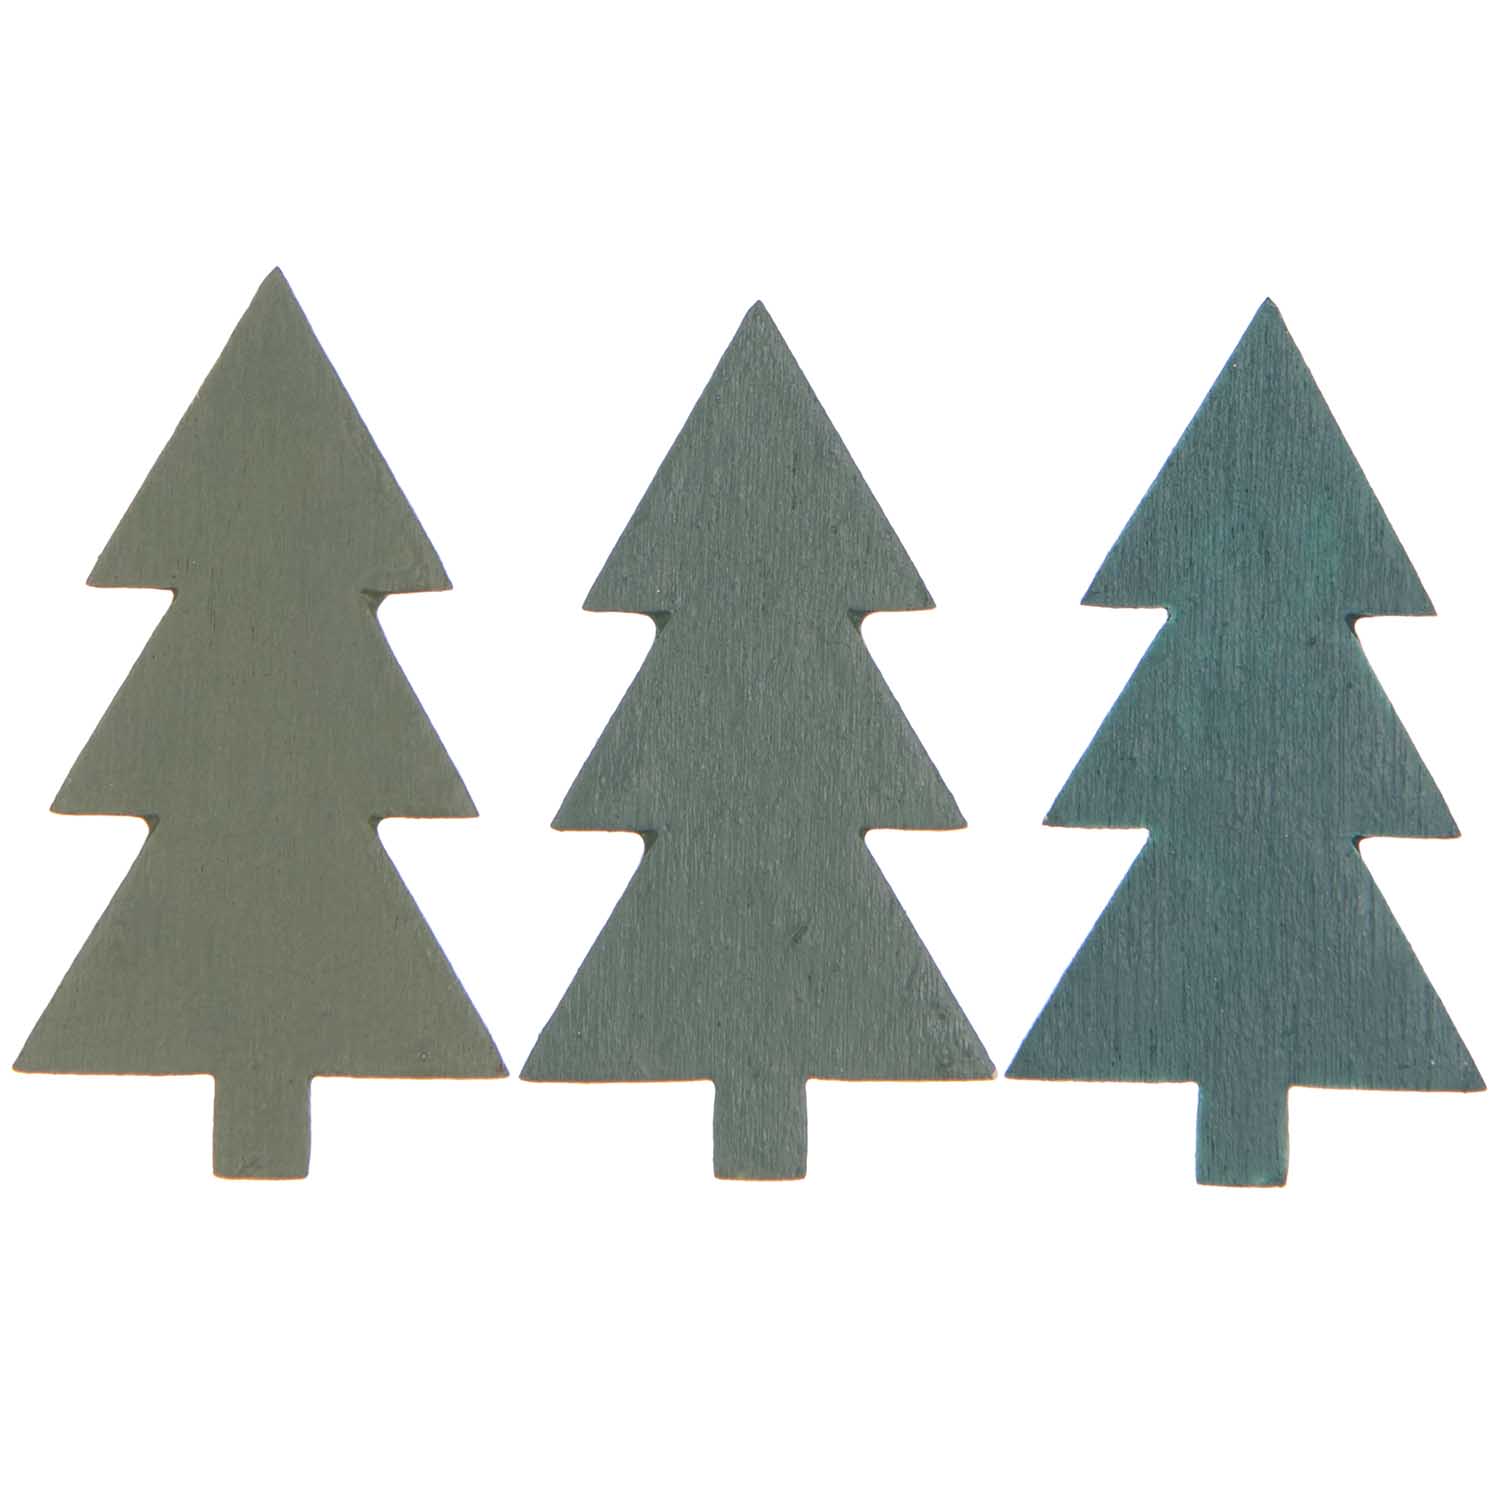 Houten kerstbomen confetti in 3 verschillende tinten groen - 36 stuks